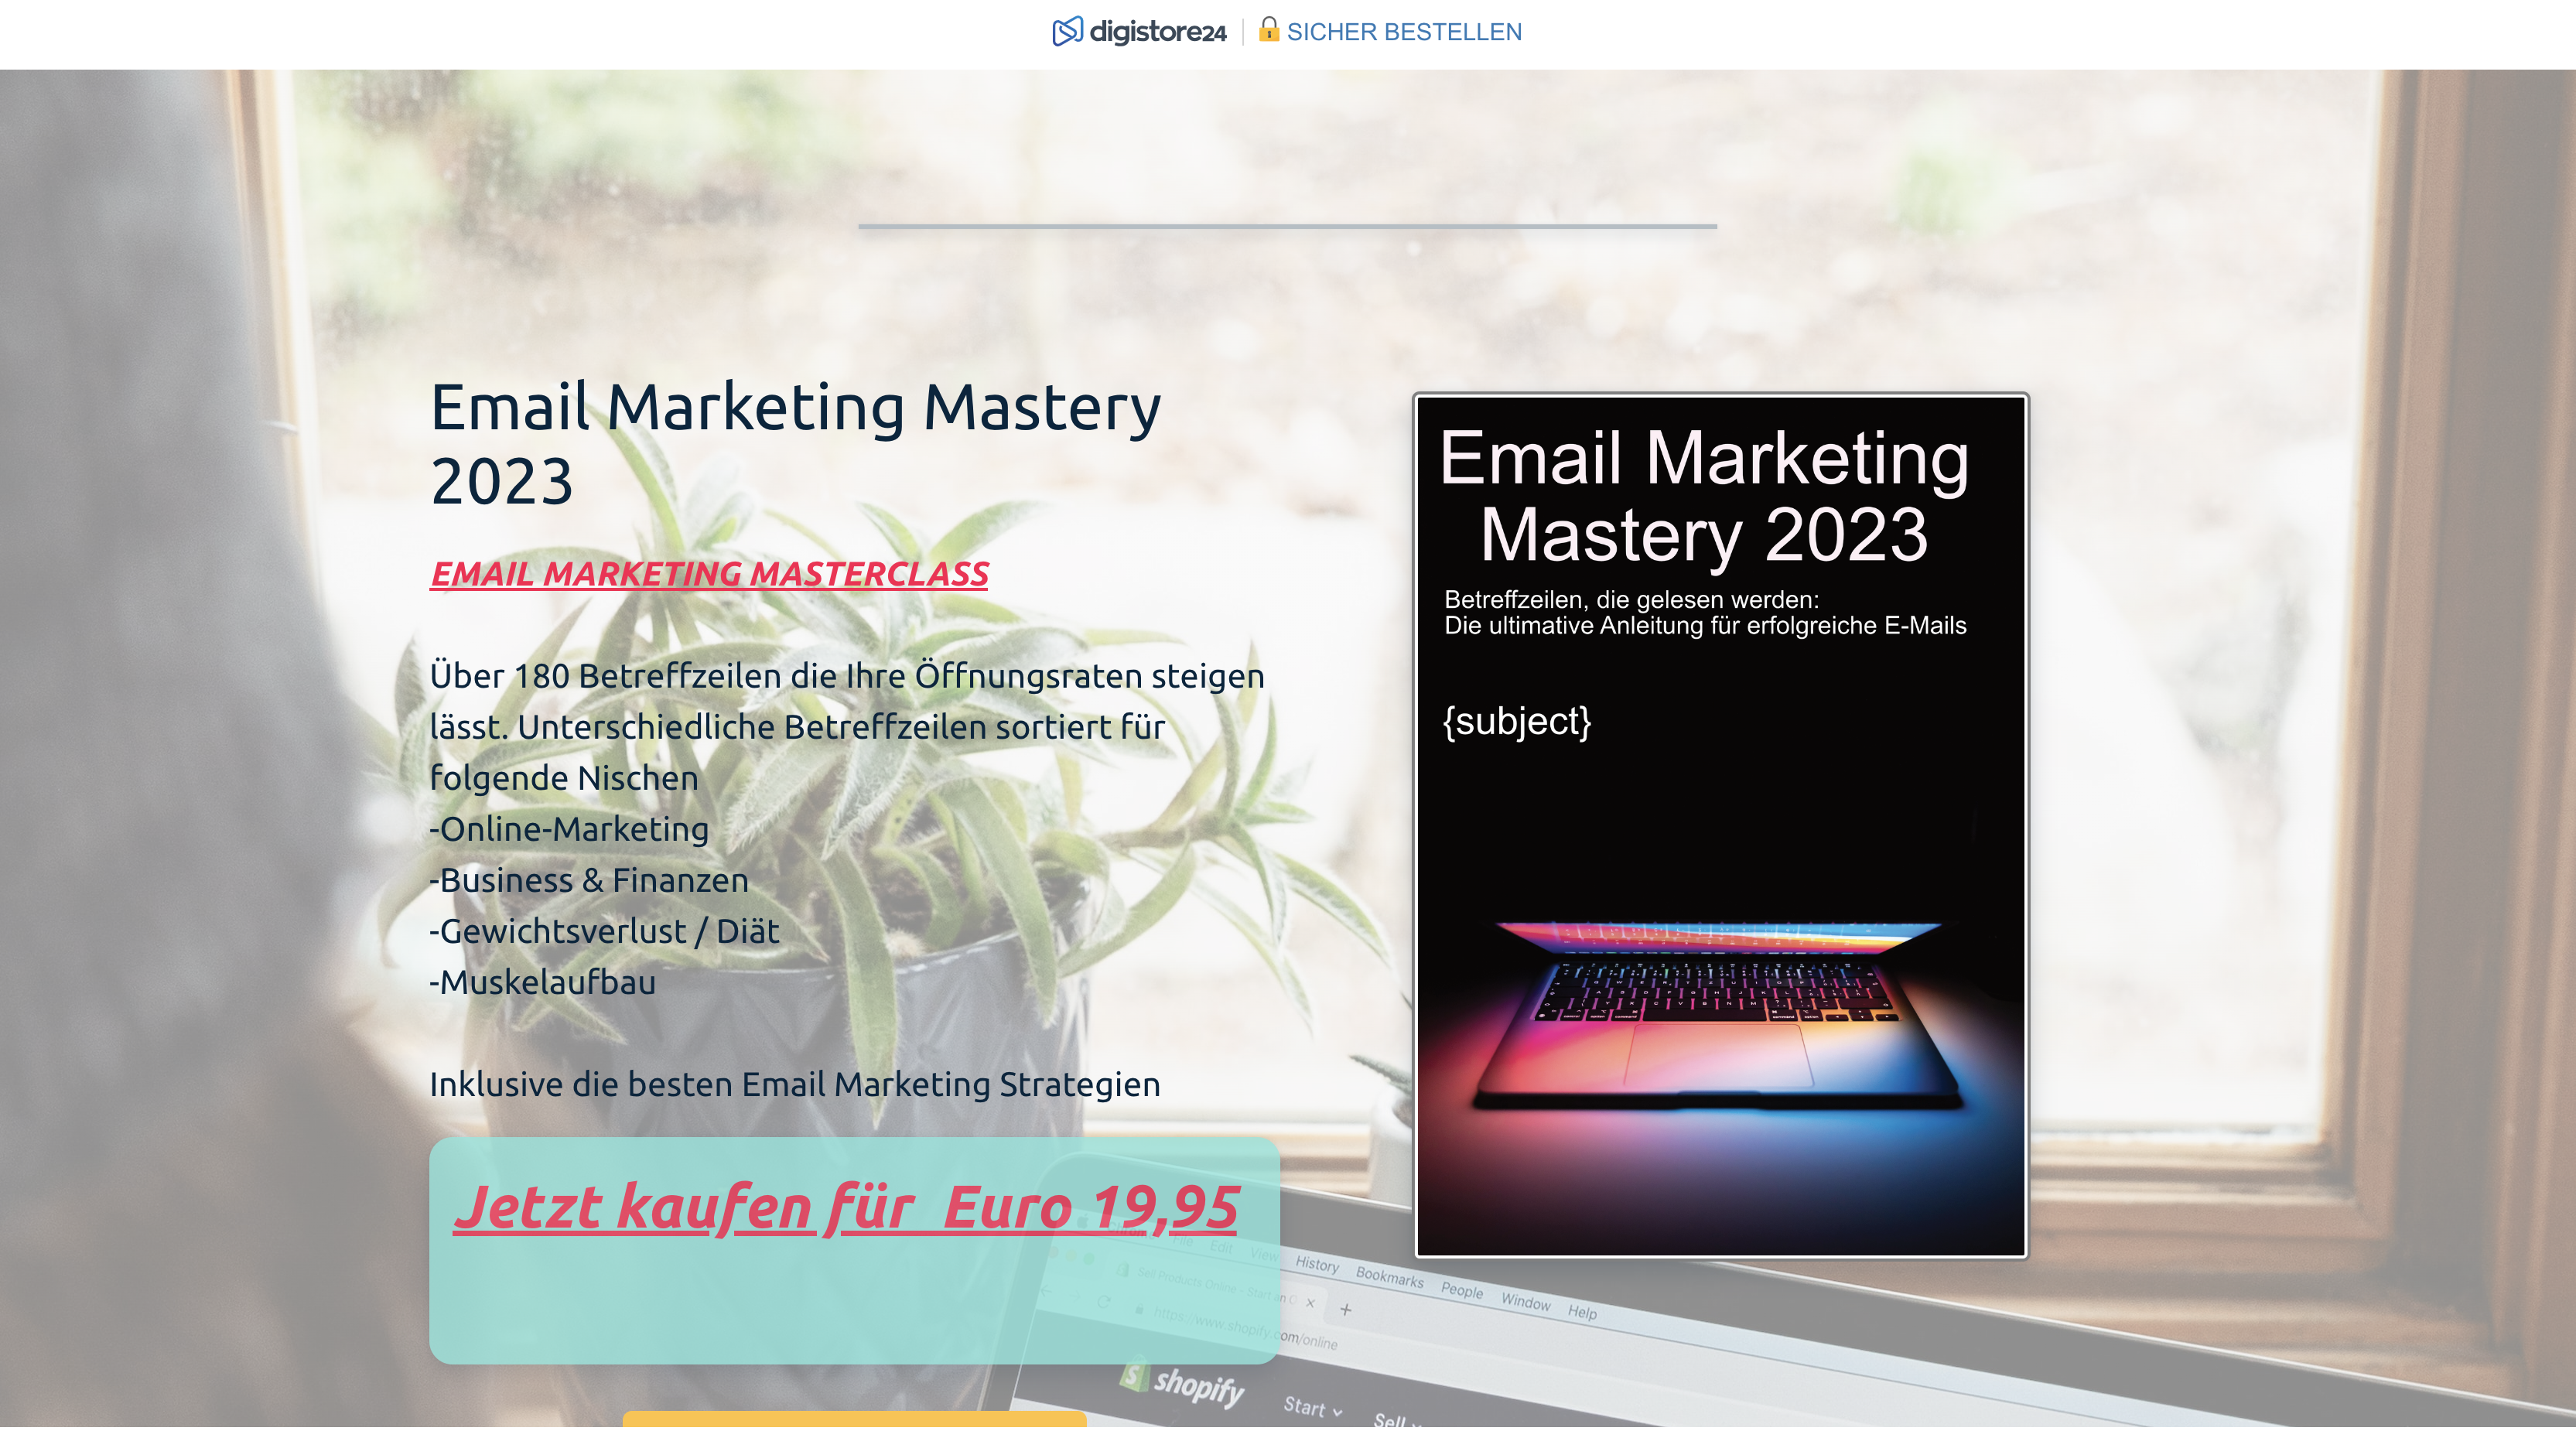 Email Marketing Mastery 2023 Erfahrugnen